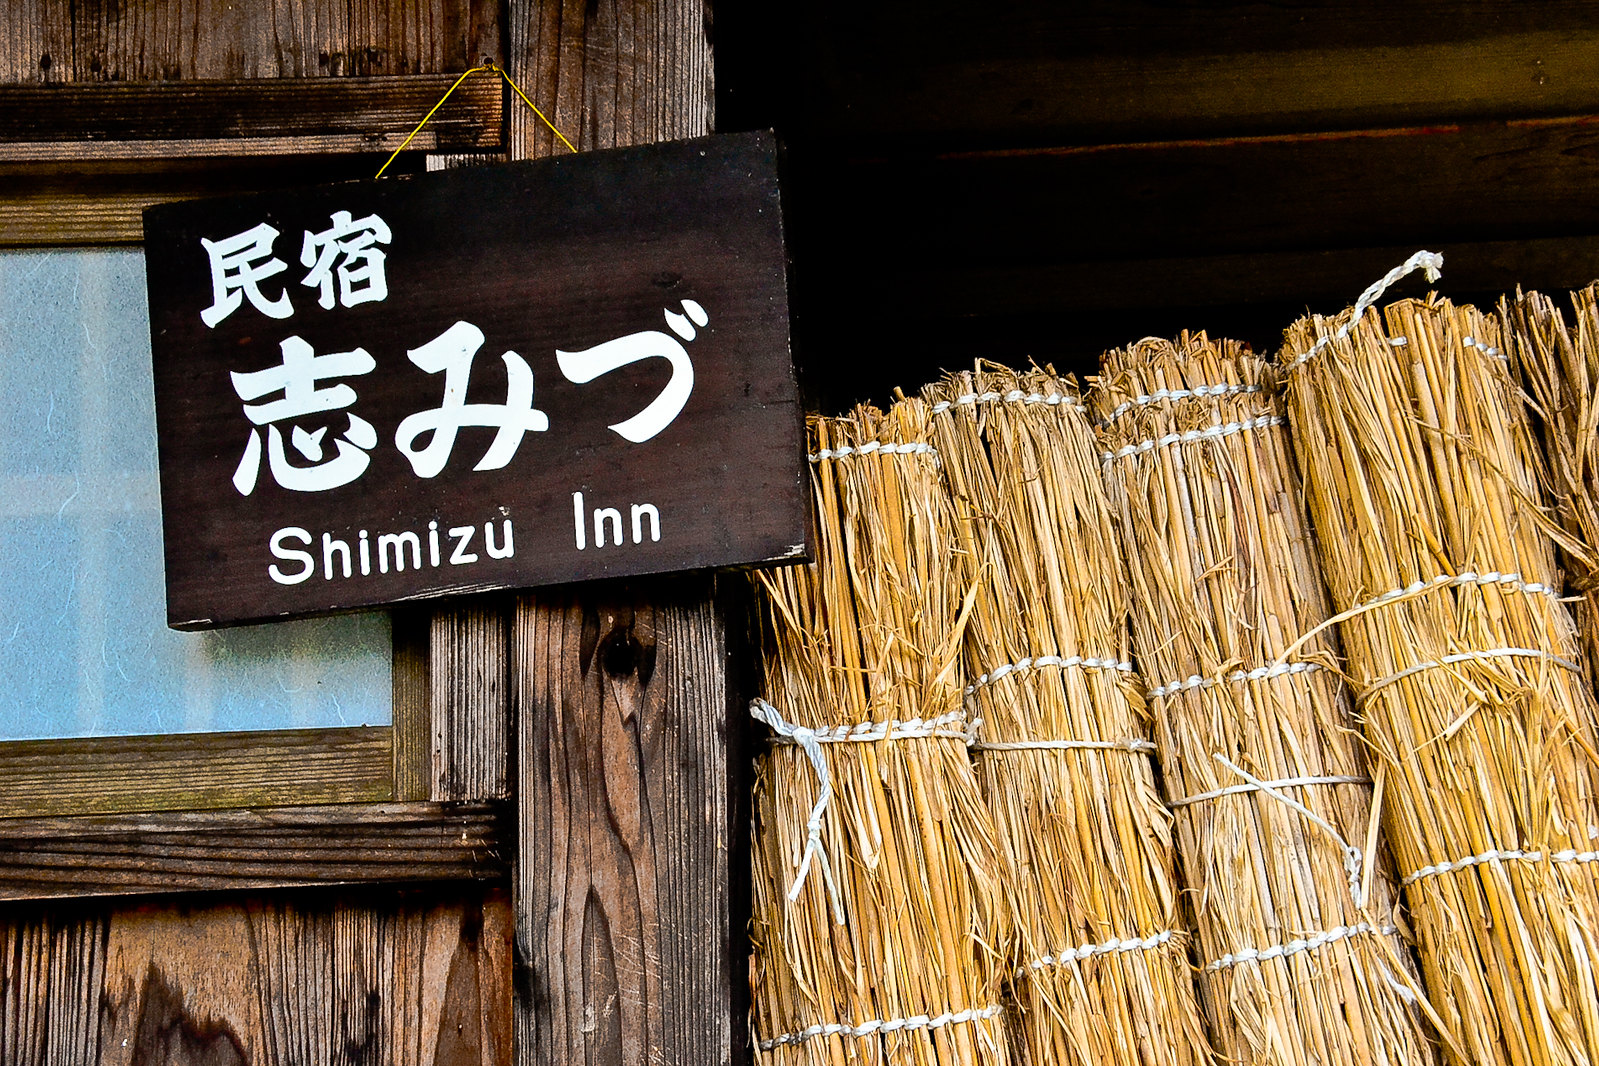 Shimizu Inn, Ogimachi, Shirakawa-gō